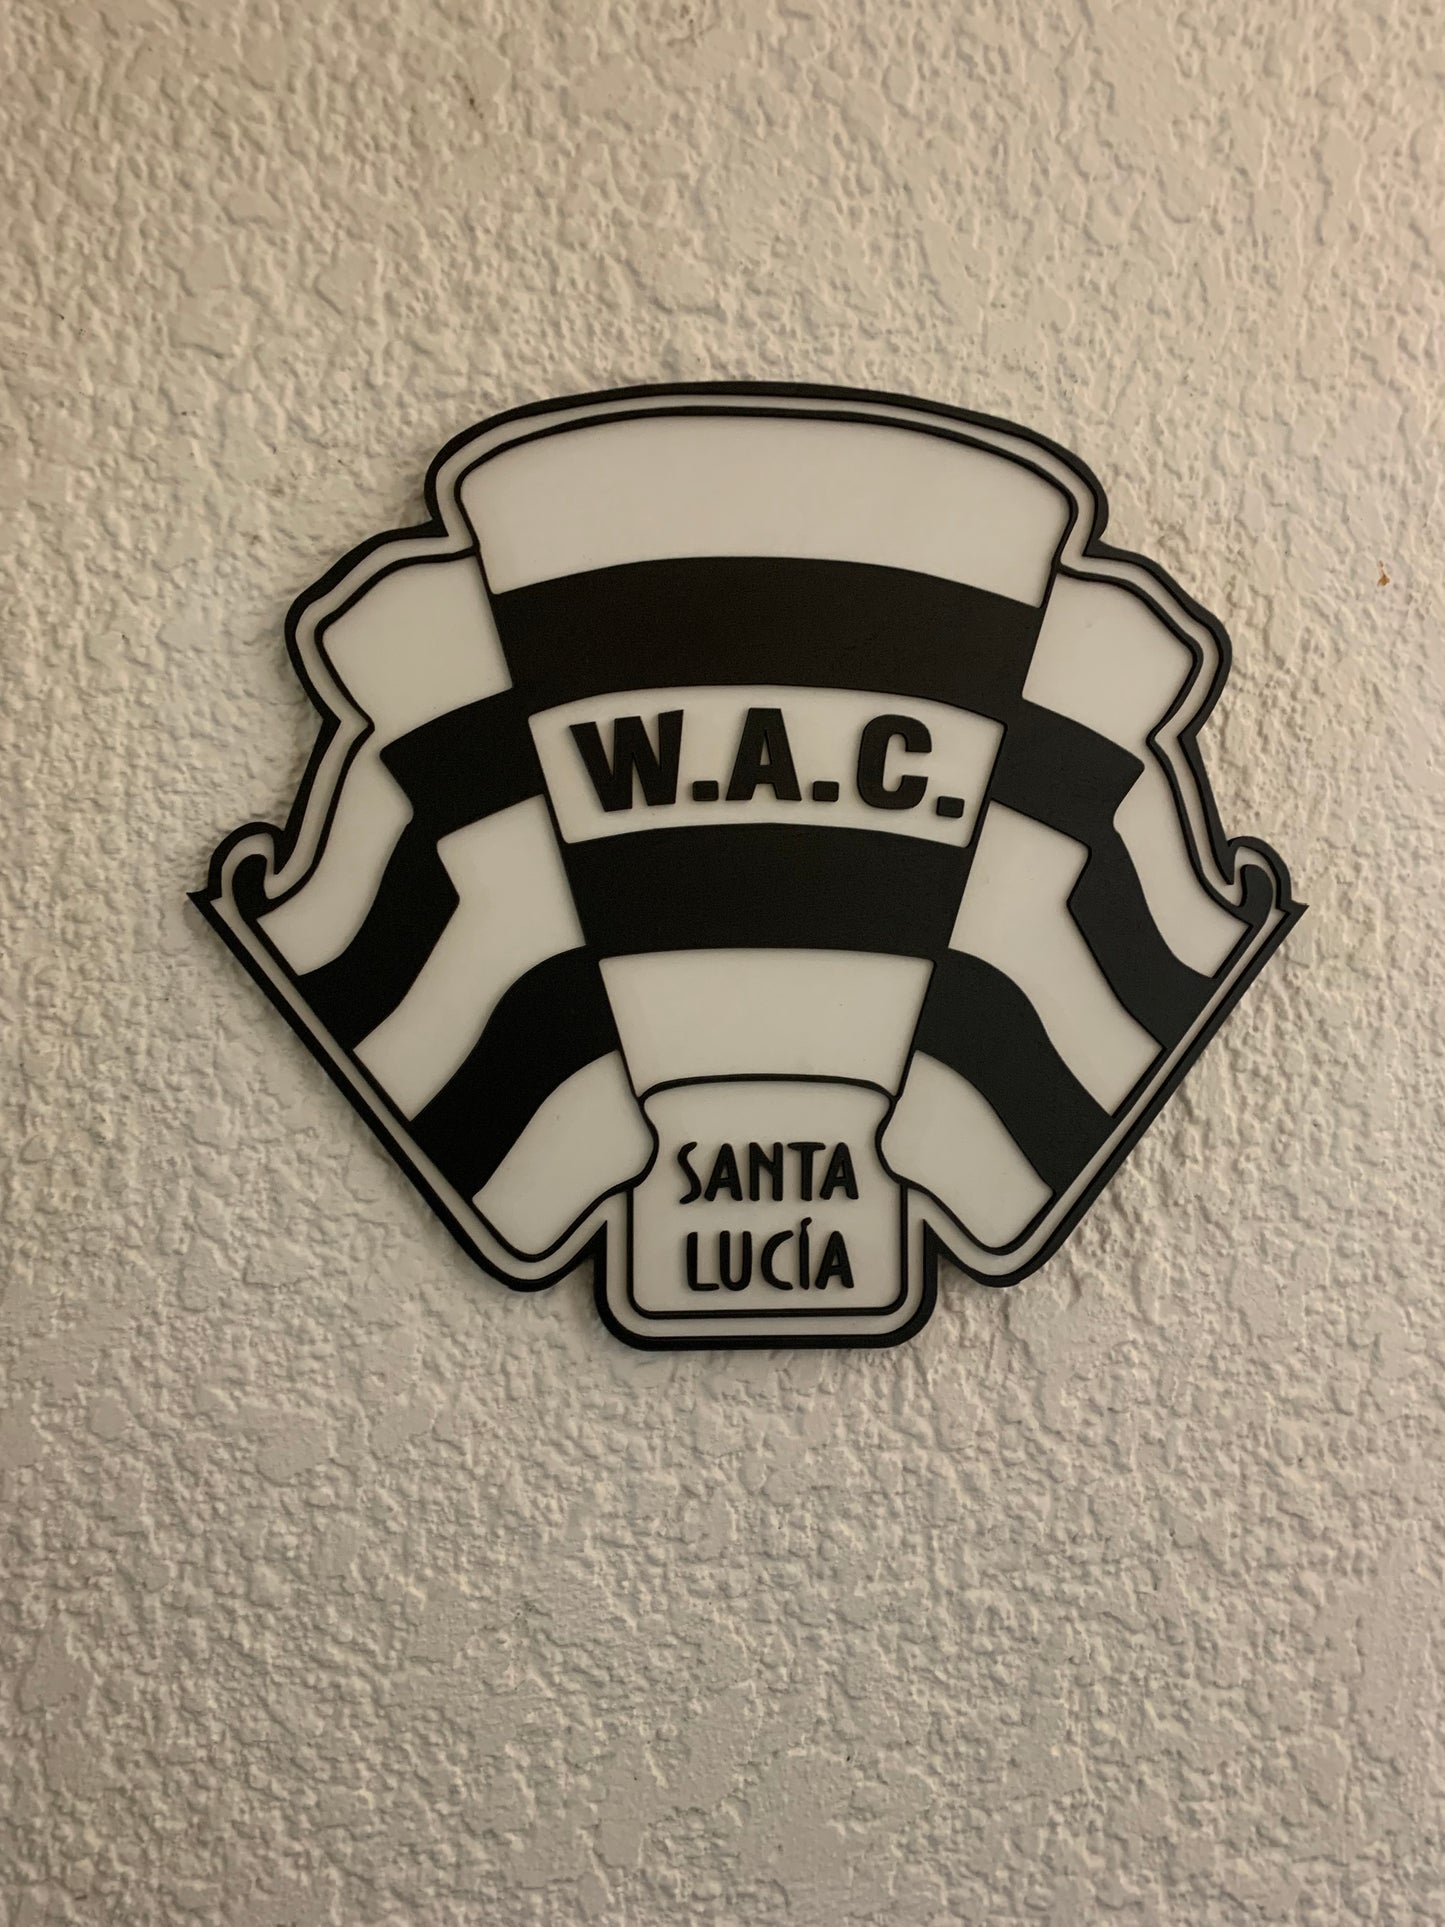 Wanderers Atlético Club de Santa Lucía